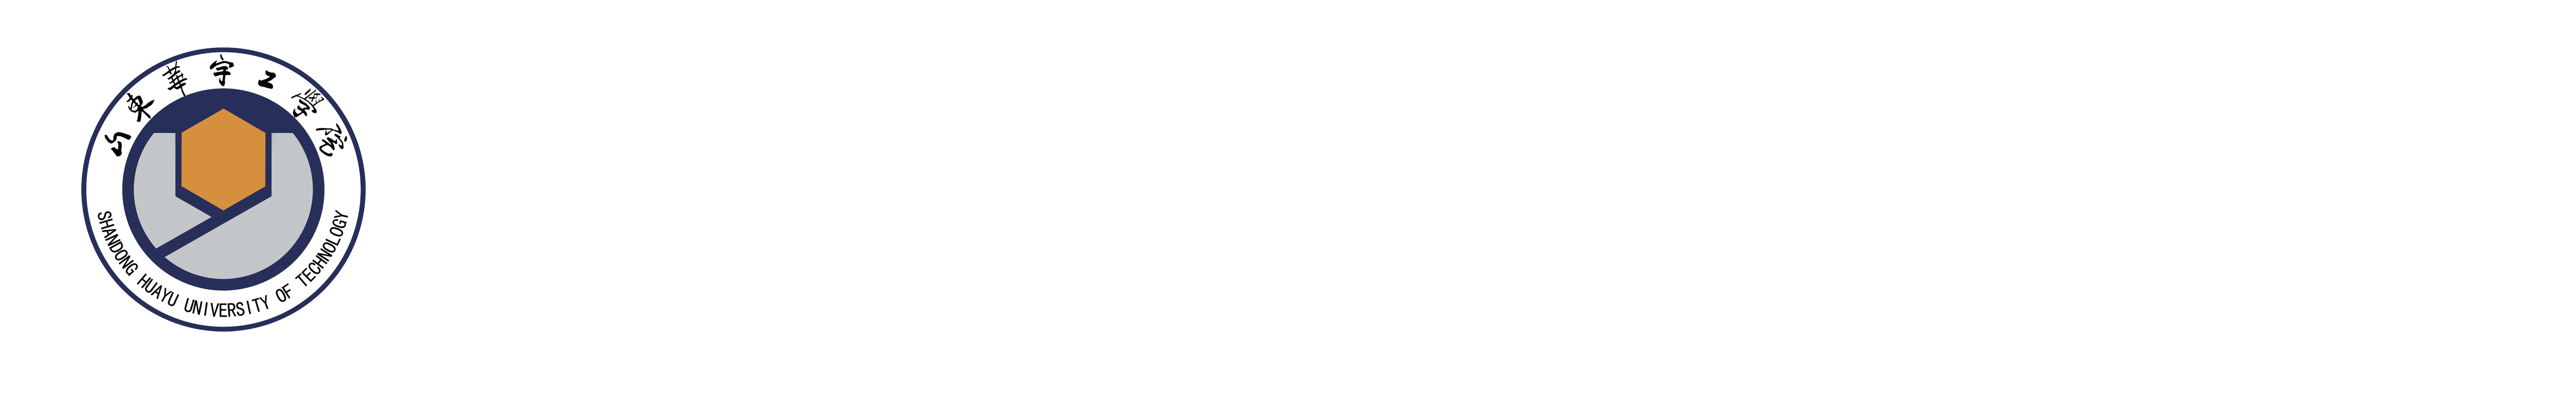 机械工程学院 - 山东华宇工学院-教育部批准的普通本科高校